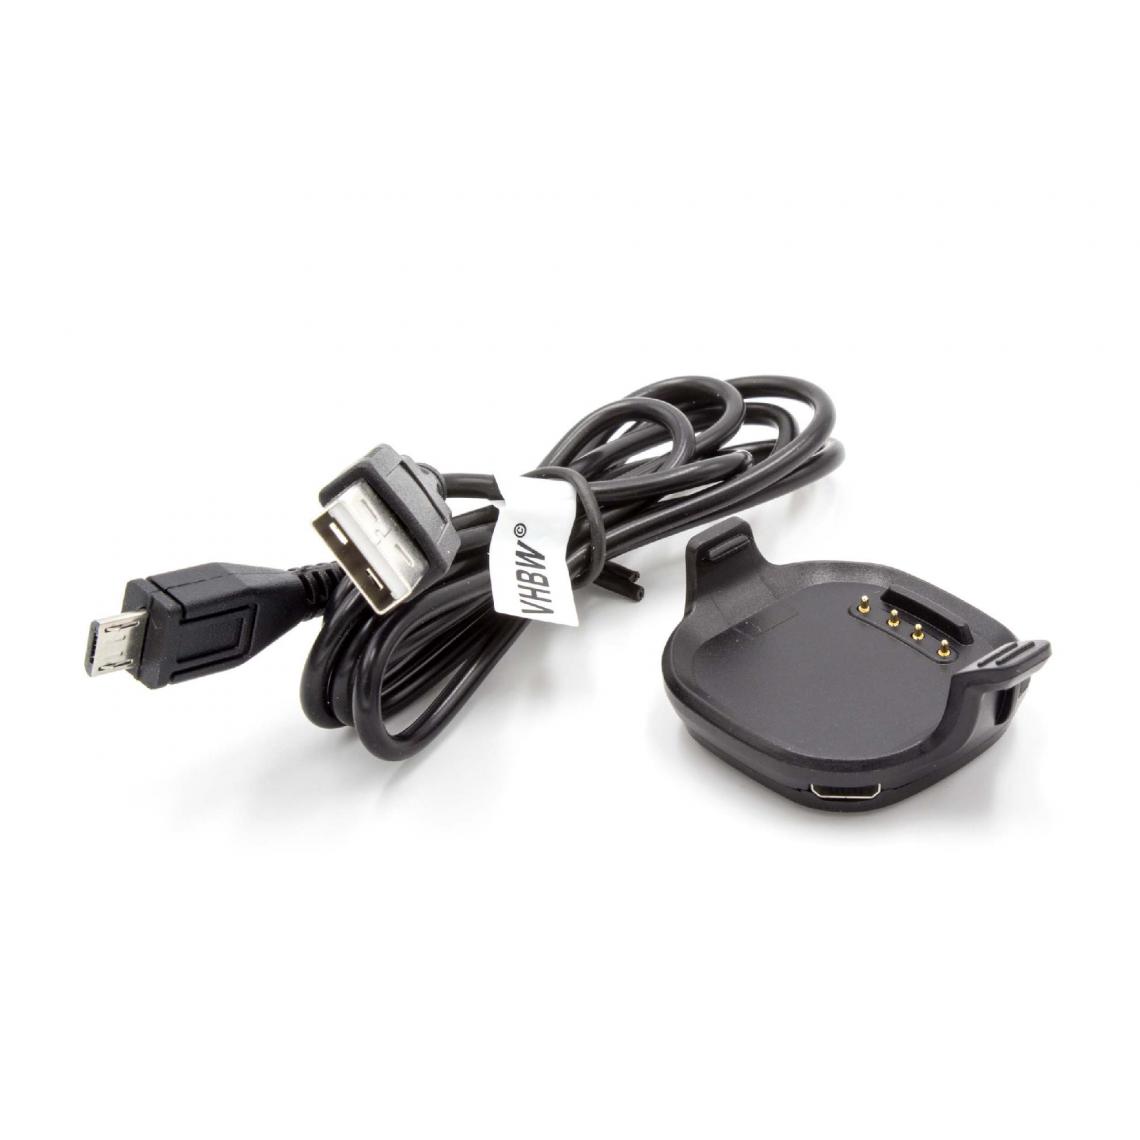 Vhbw - vhbw Station de chargement Chargeur avec câble Micro USB pour Smartwatch Garmin Forerunner 10 petite montre. - Accessoires montres connectées